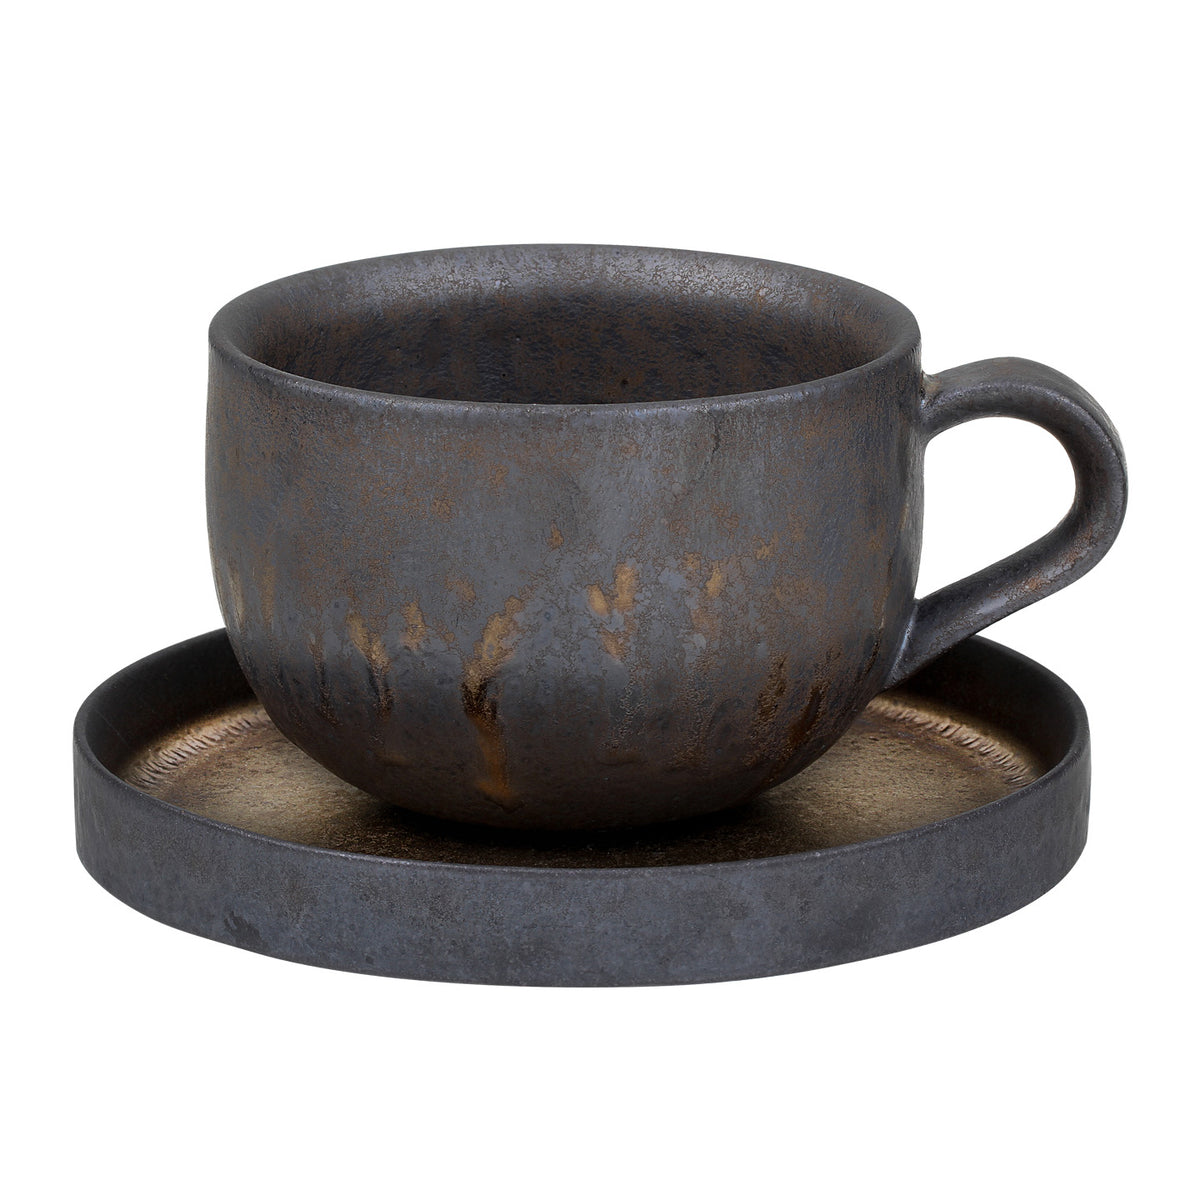 http://www.eilong.com/cdn/shop/products/coffee-cup-set-iron-glaze-saucer-07_1200x1200.jpg?v=1654498304